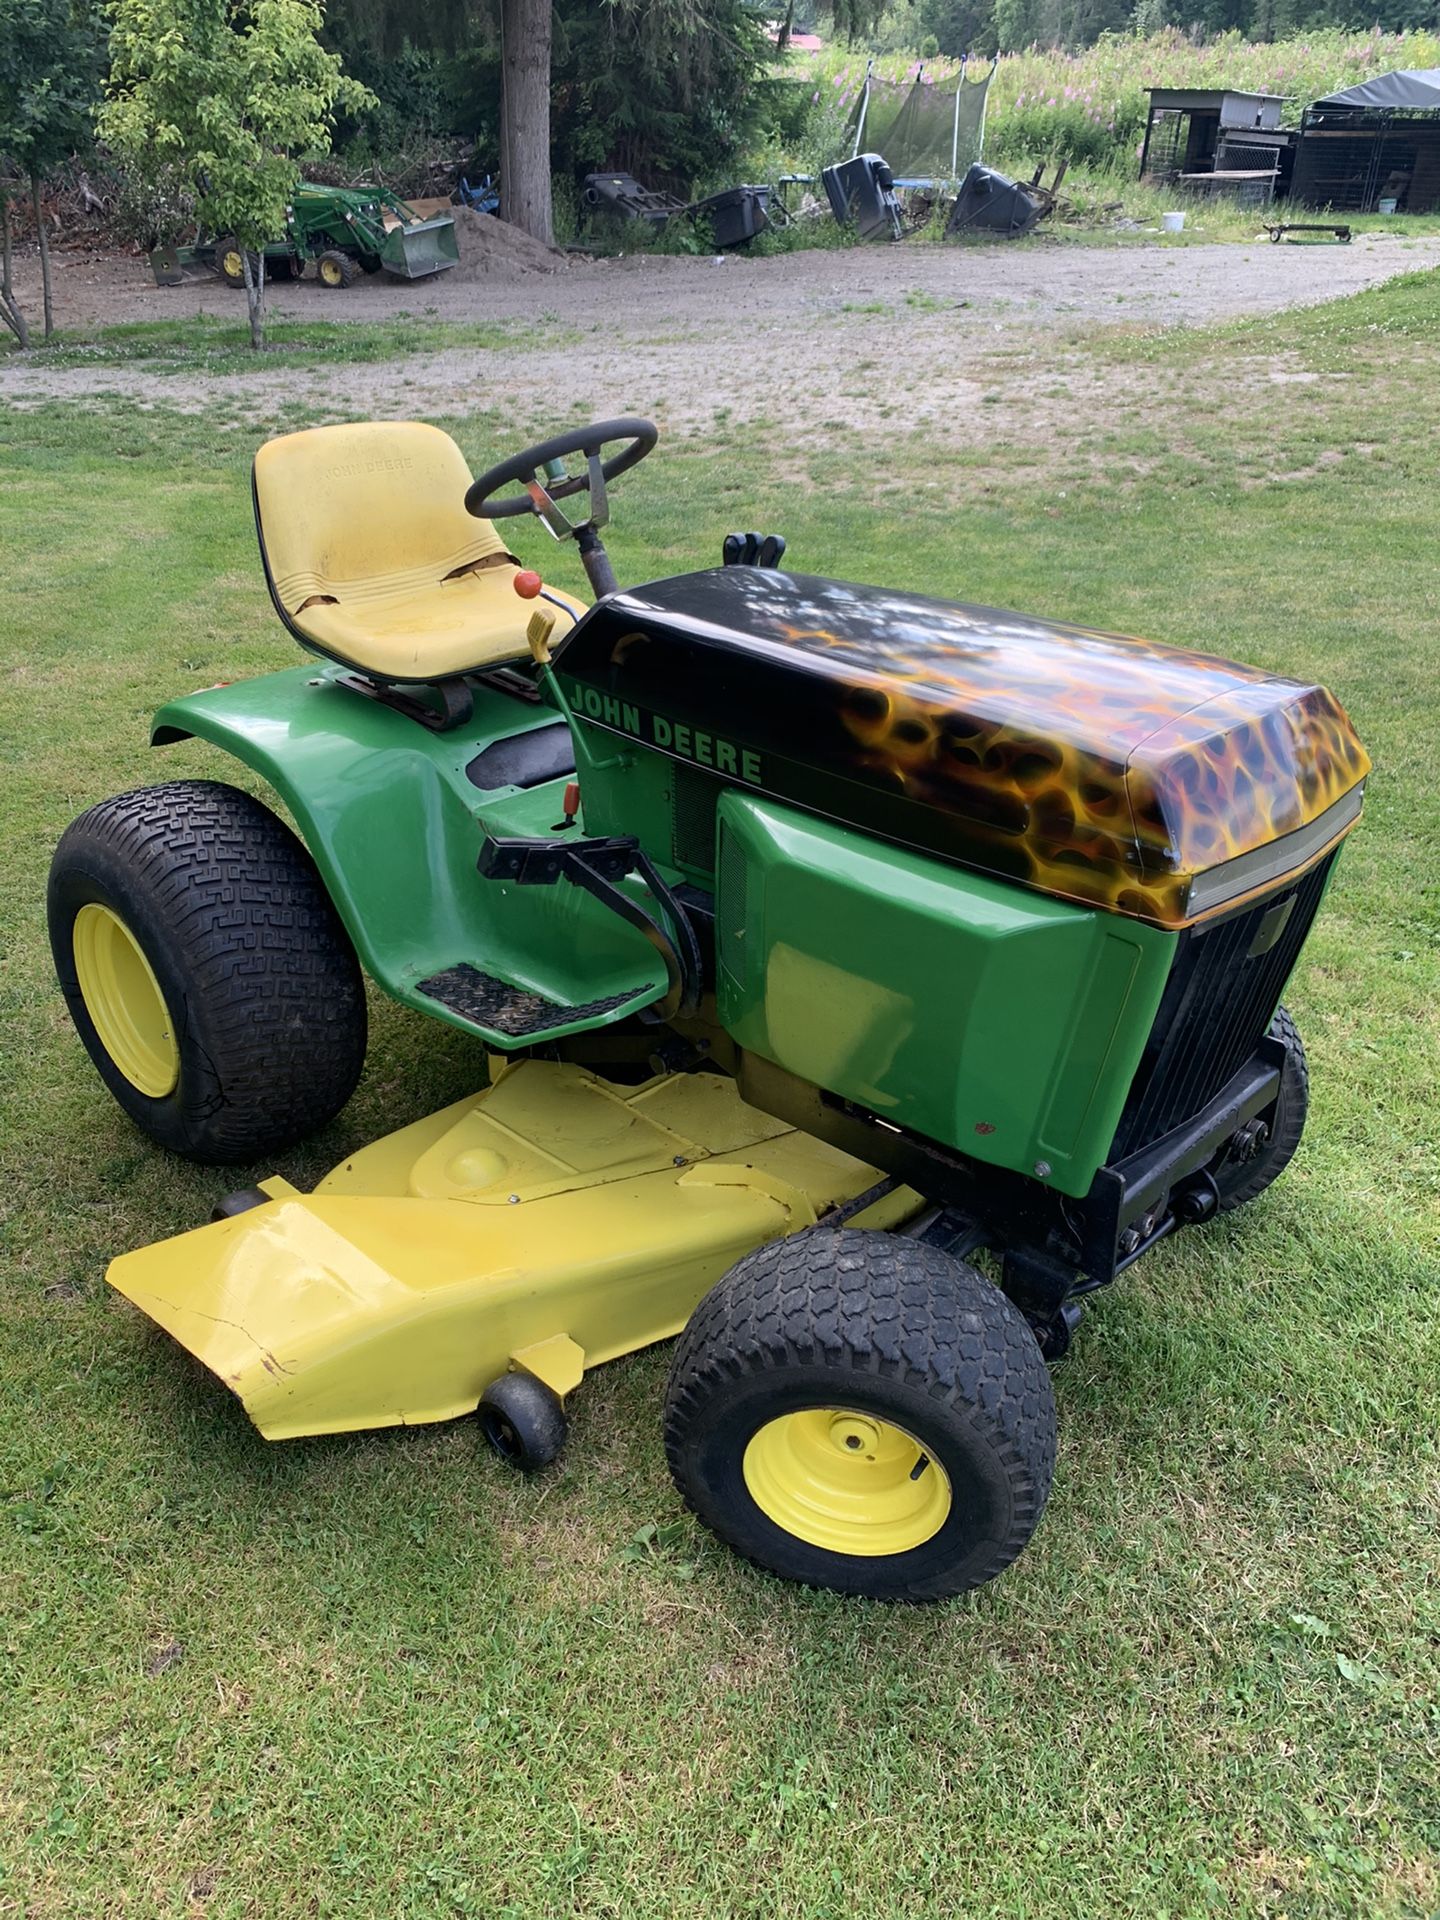 John Deere 400 garden tractor